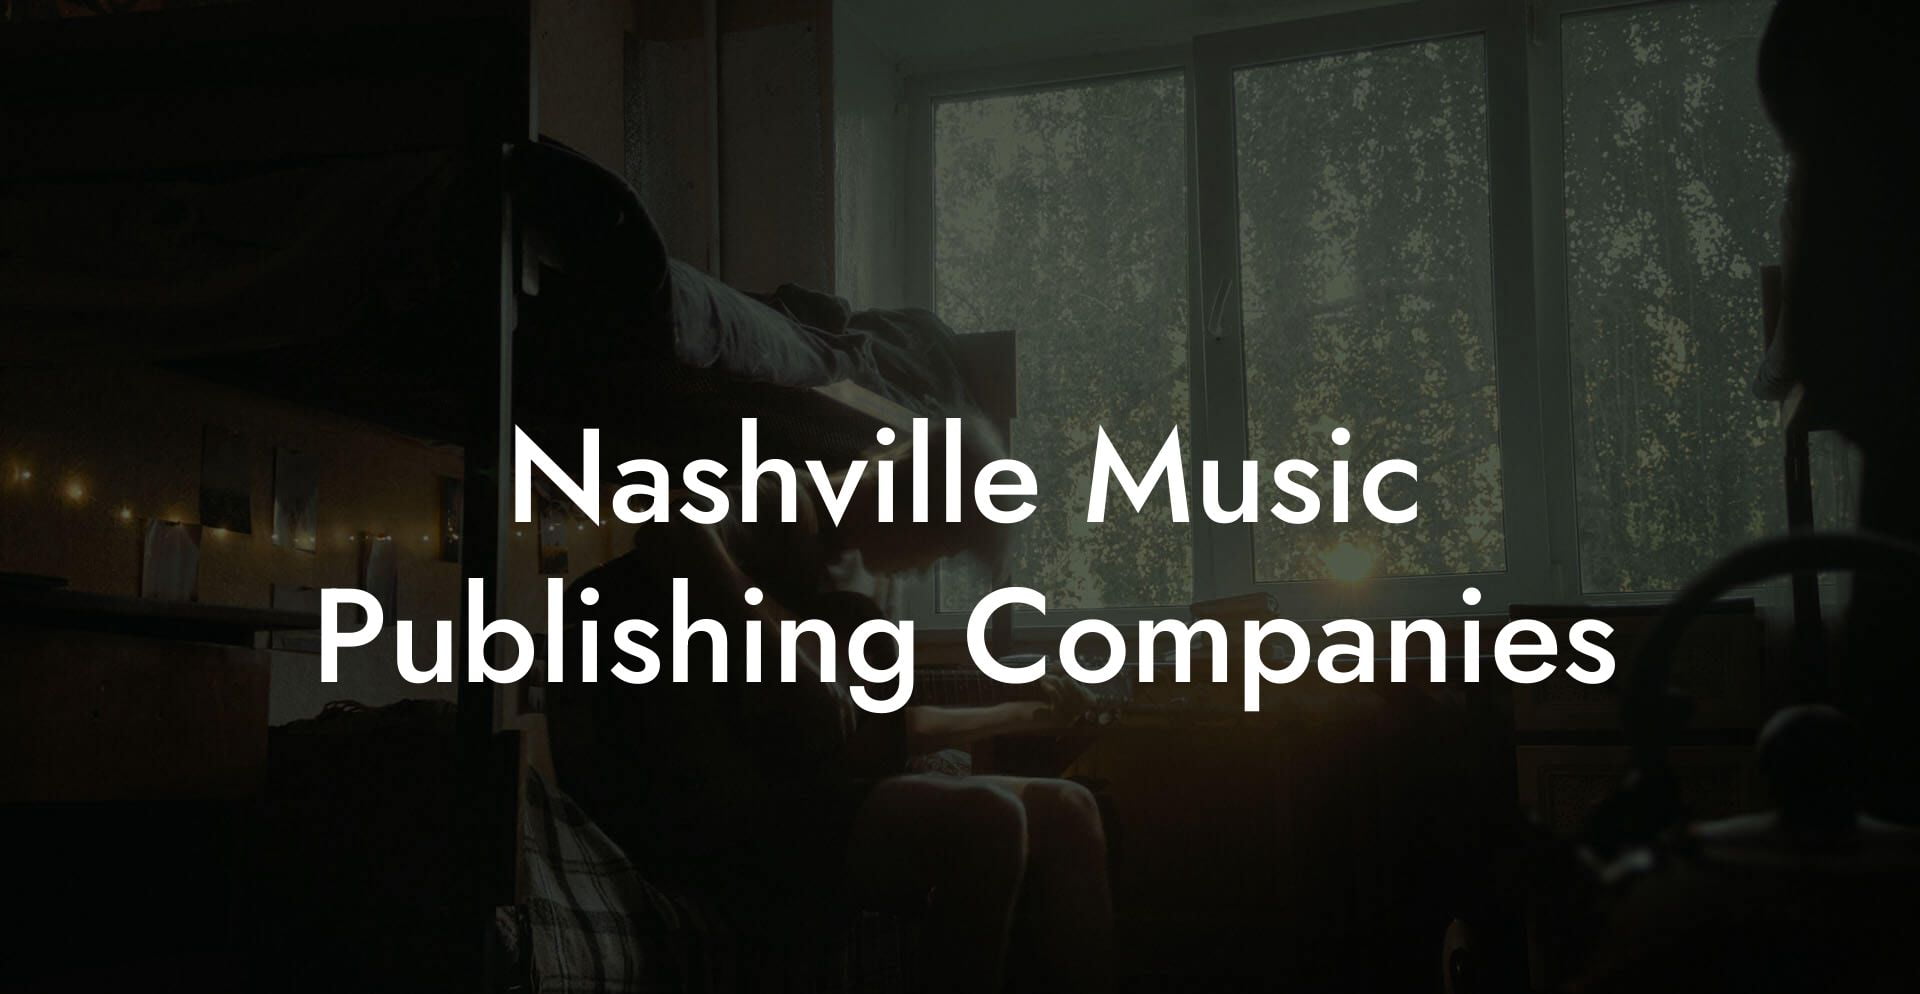 Nashville Music Publishing Companies